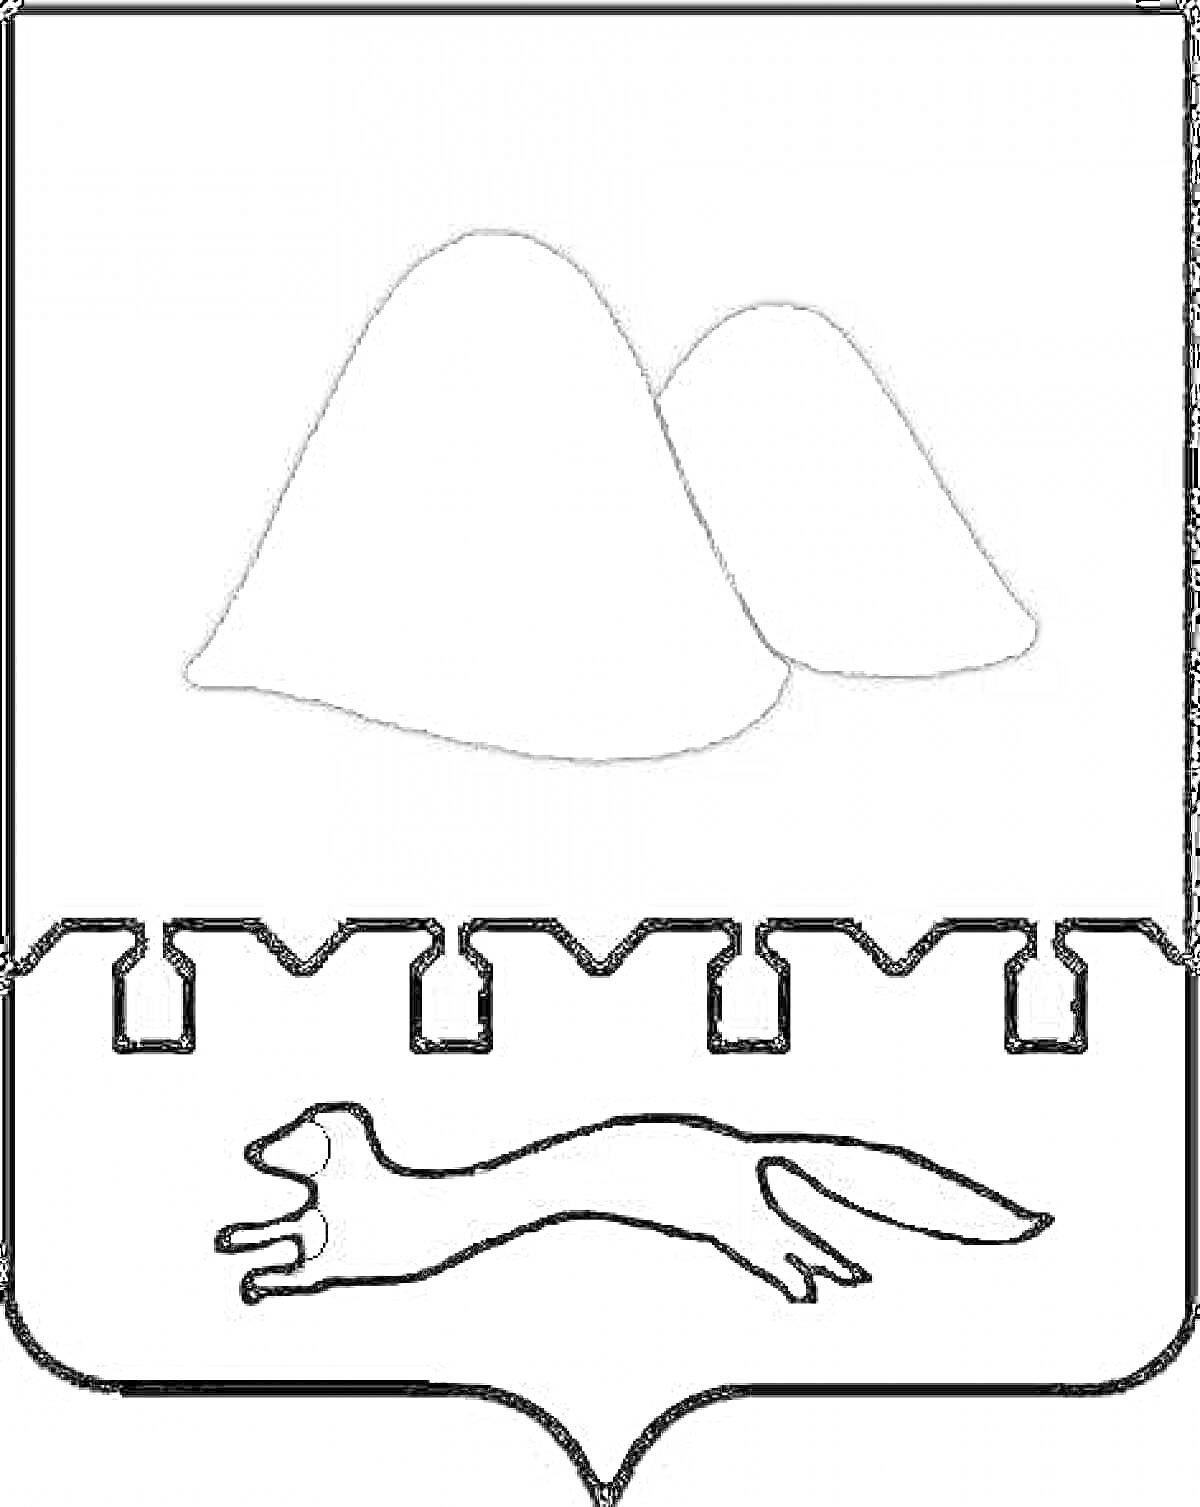 Герб Курганской области с двумя курганами и бегущей куницей на фоне зубчатой стены